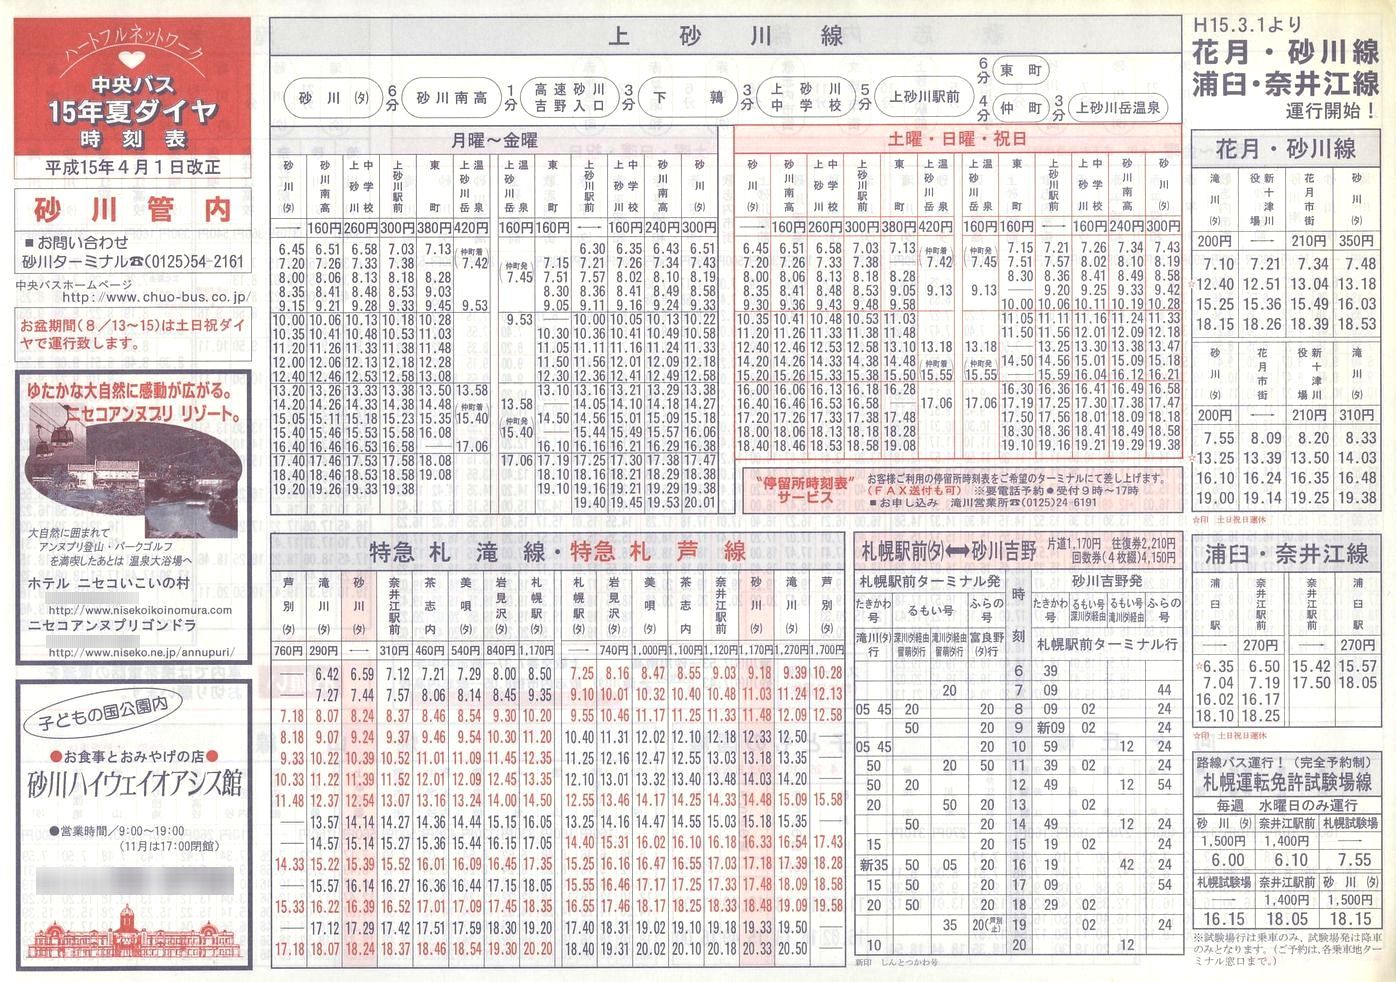 2003-04-01改正_北海道中央バス(空知)_砂川管内線時刻表表面